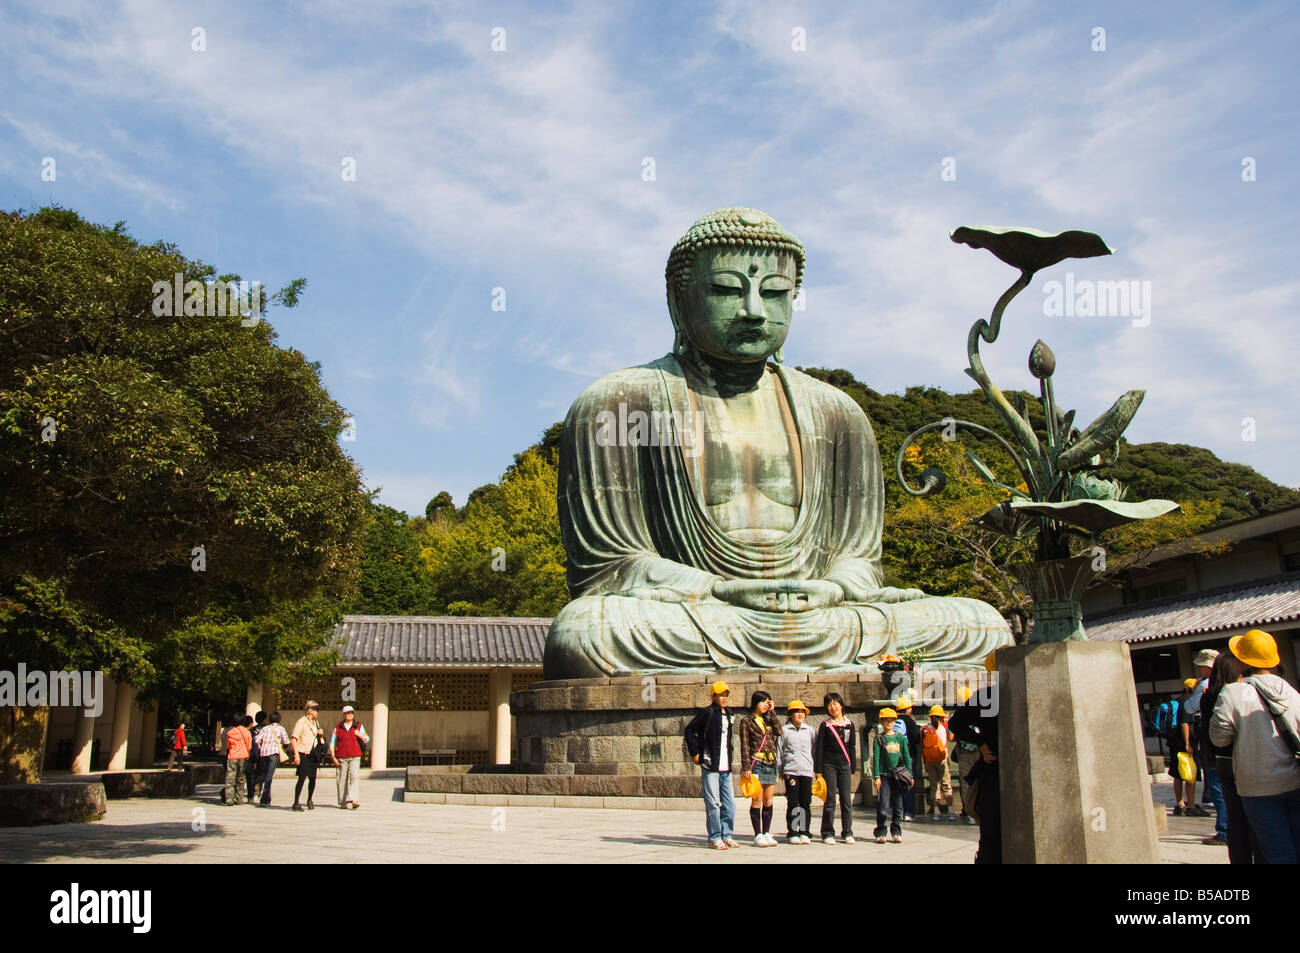 Big Buddha Daibutsu construit en 1252 pesant 121 tonnes Ville Kamakura Kanagawa l'île de Honshu au Japon Asie Banque D'Images